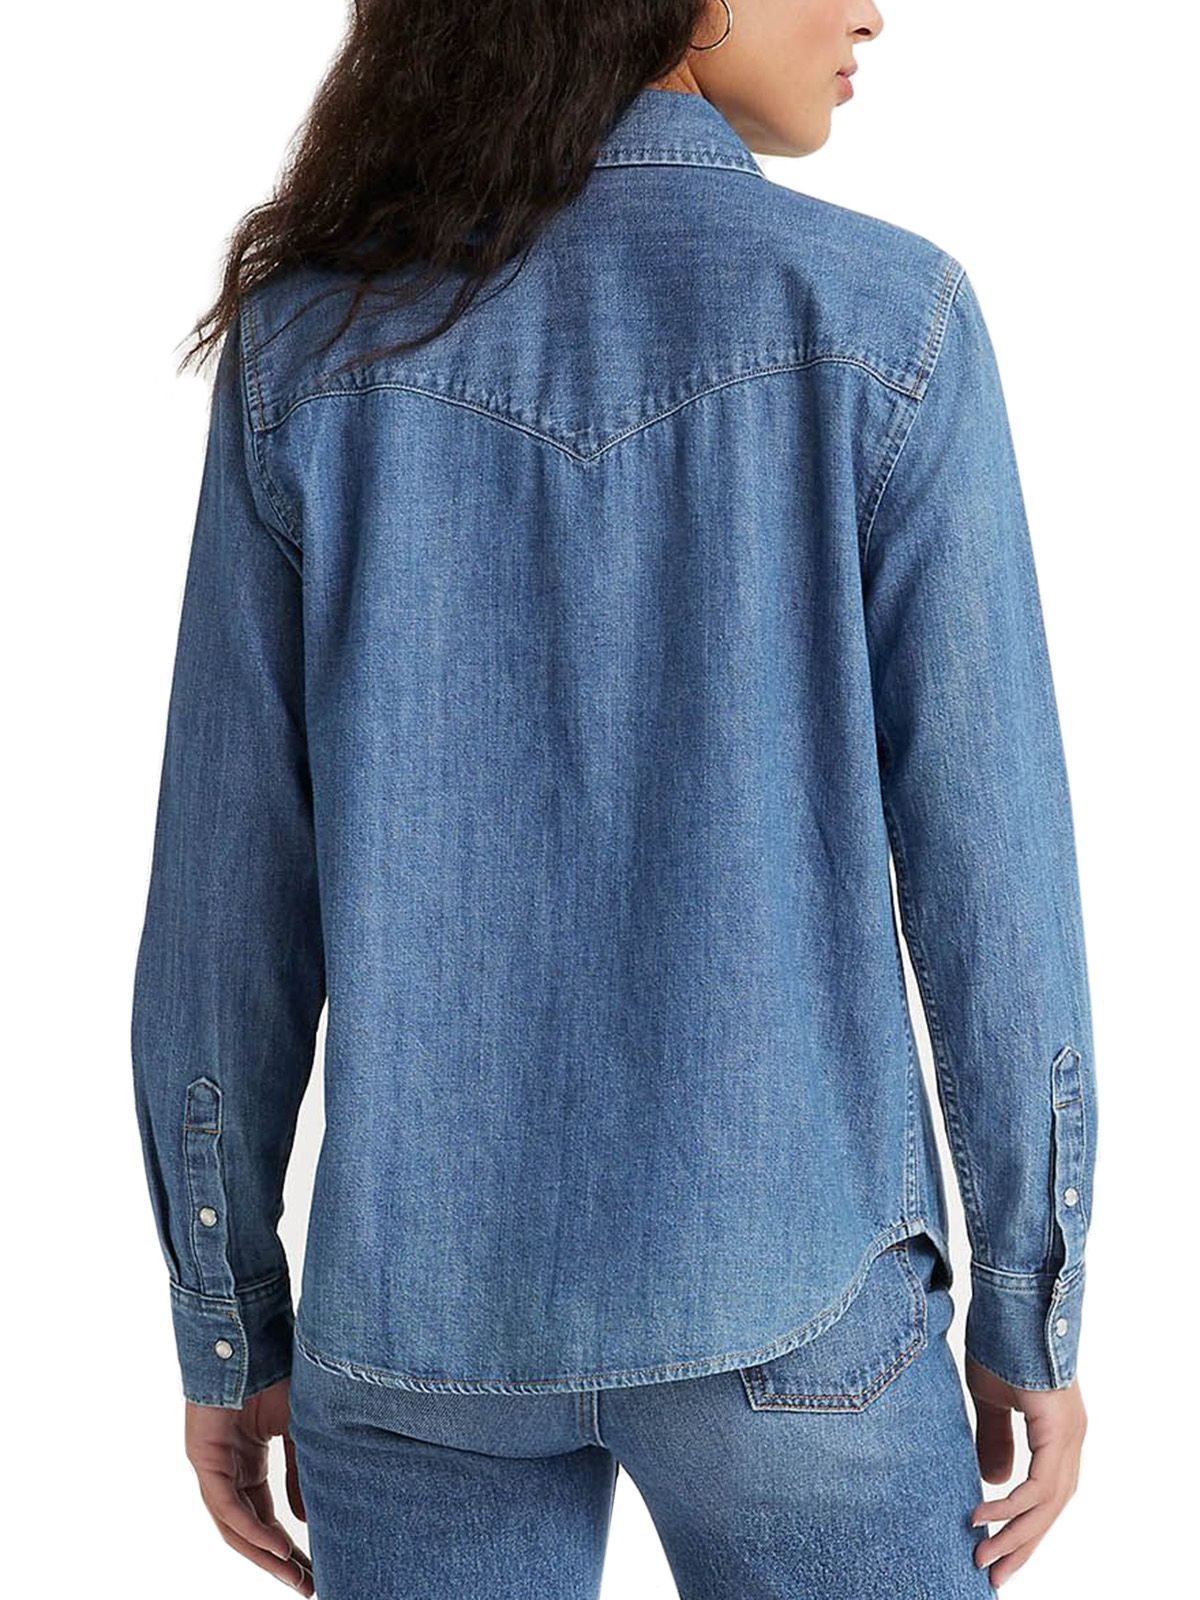 Bluse e camicie Donna Levi's - Classica Camicia Western - Blu